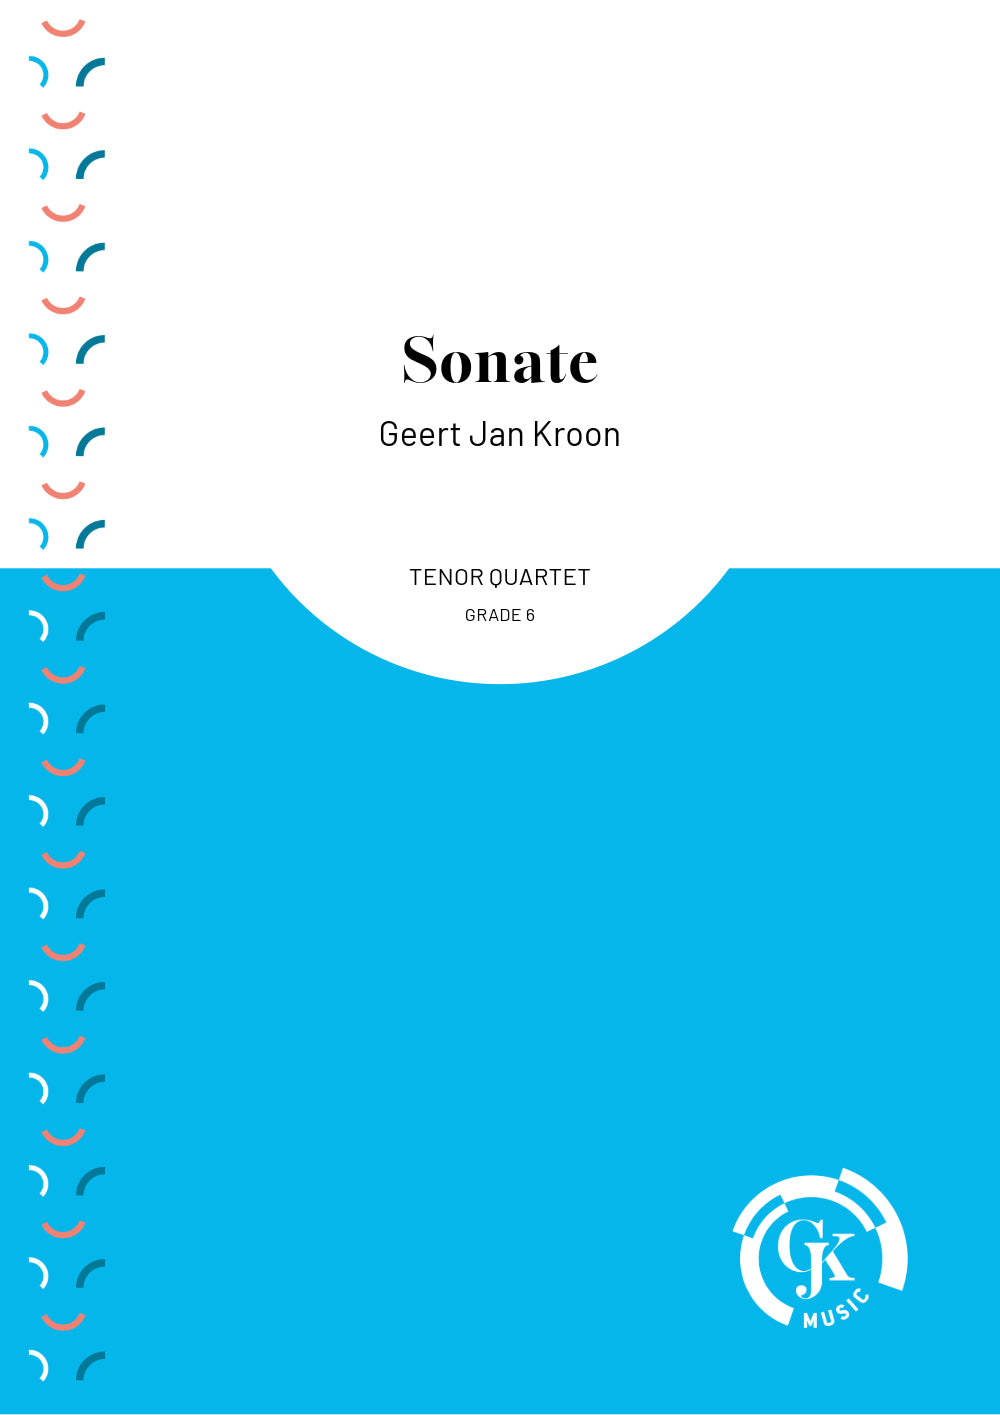 Sonate - Tenor Quartet